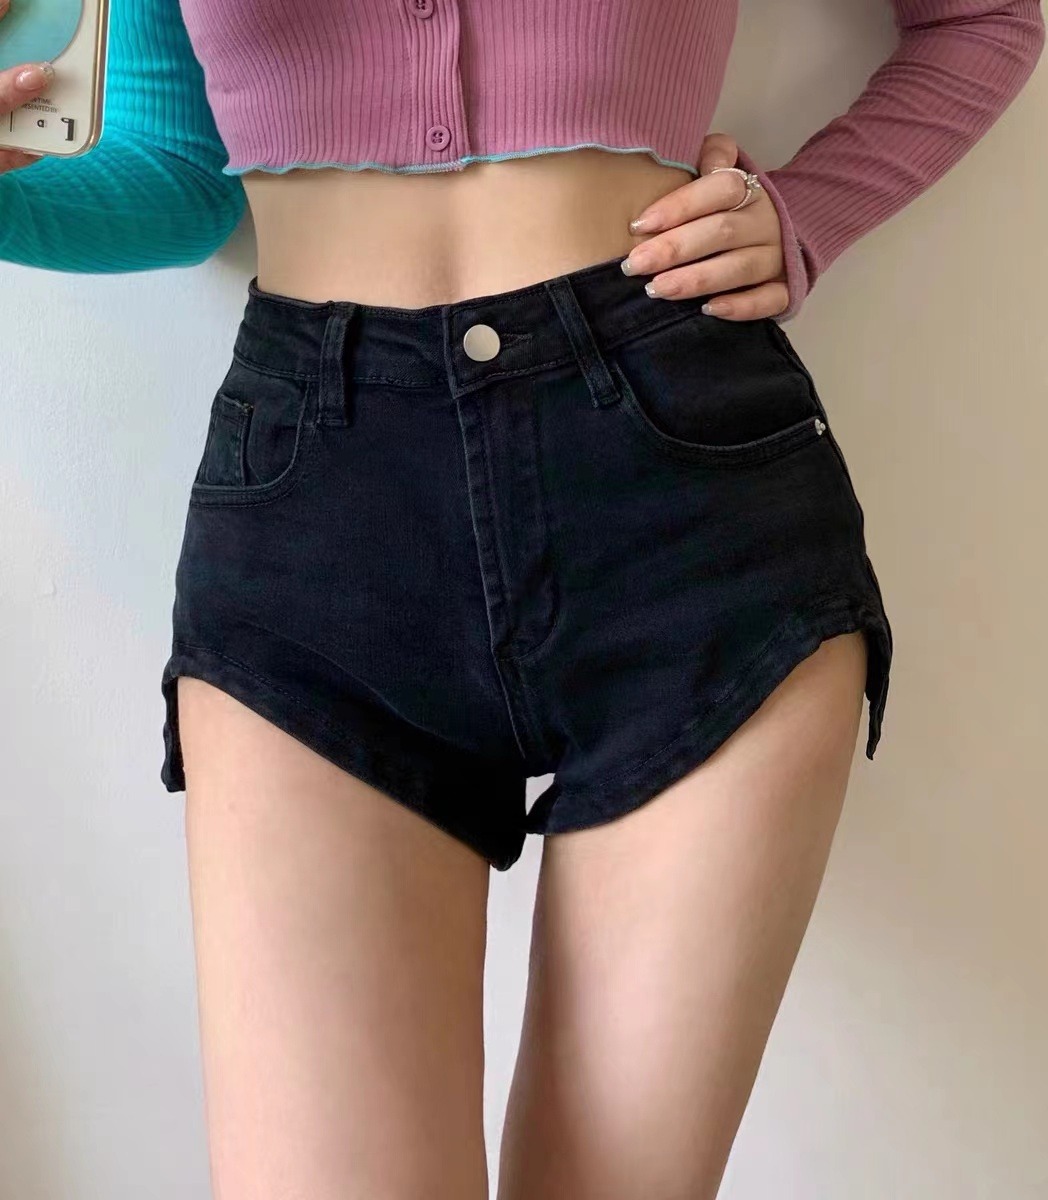 Design Sense Denim Shorts Women's Slim Fit Summer Small High Waist Tight Niche Hot Girl Sexy Ultra Short Hot Pants